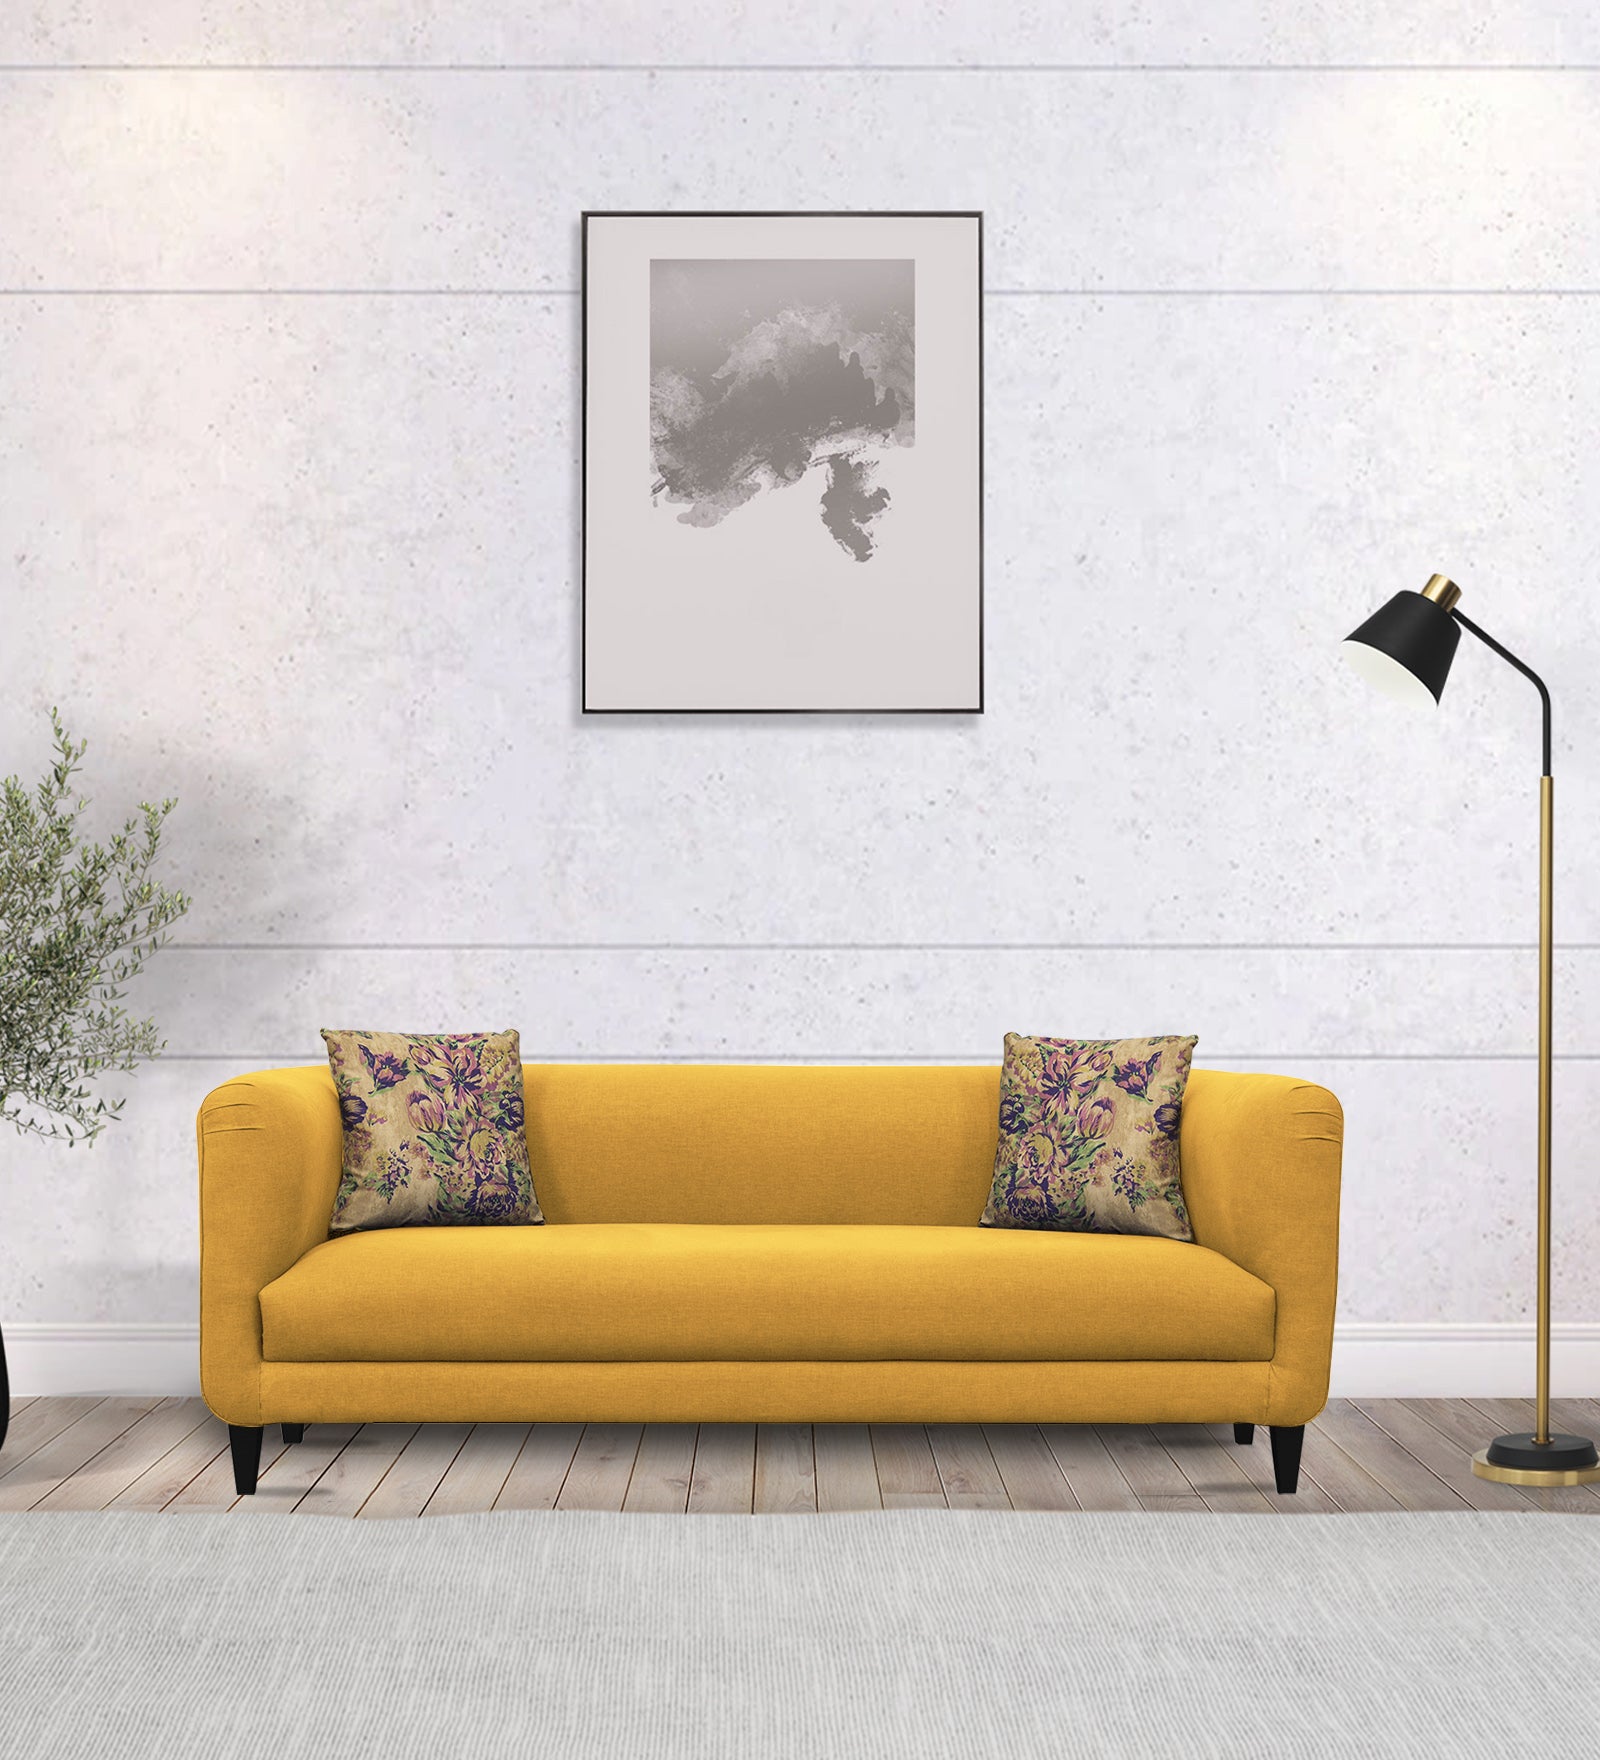 Niki Fabric 3 Seater Sofa in Bold Yellow Colour